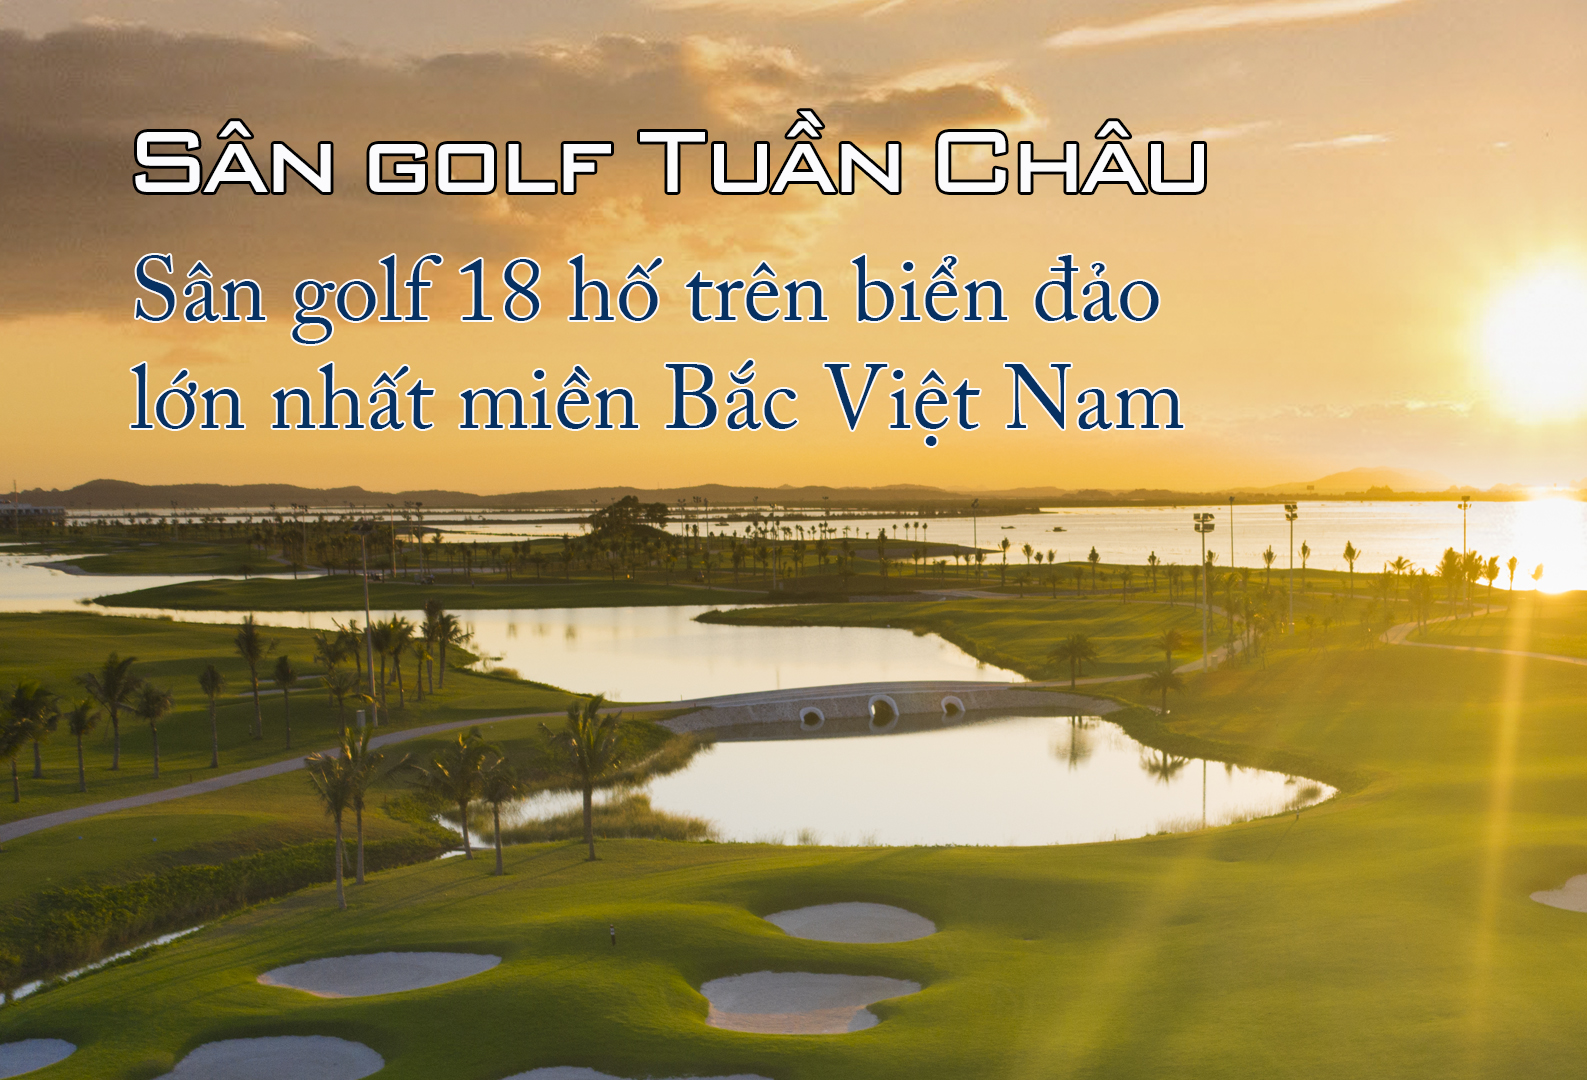 Sân golf Tuần Châu - Sân golf 18 hố trên biển đảo lớn nhất miền Bắc Việt Nam